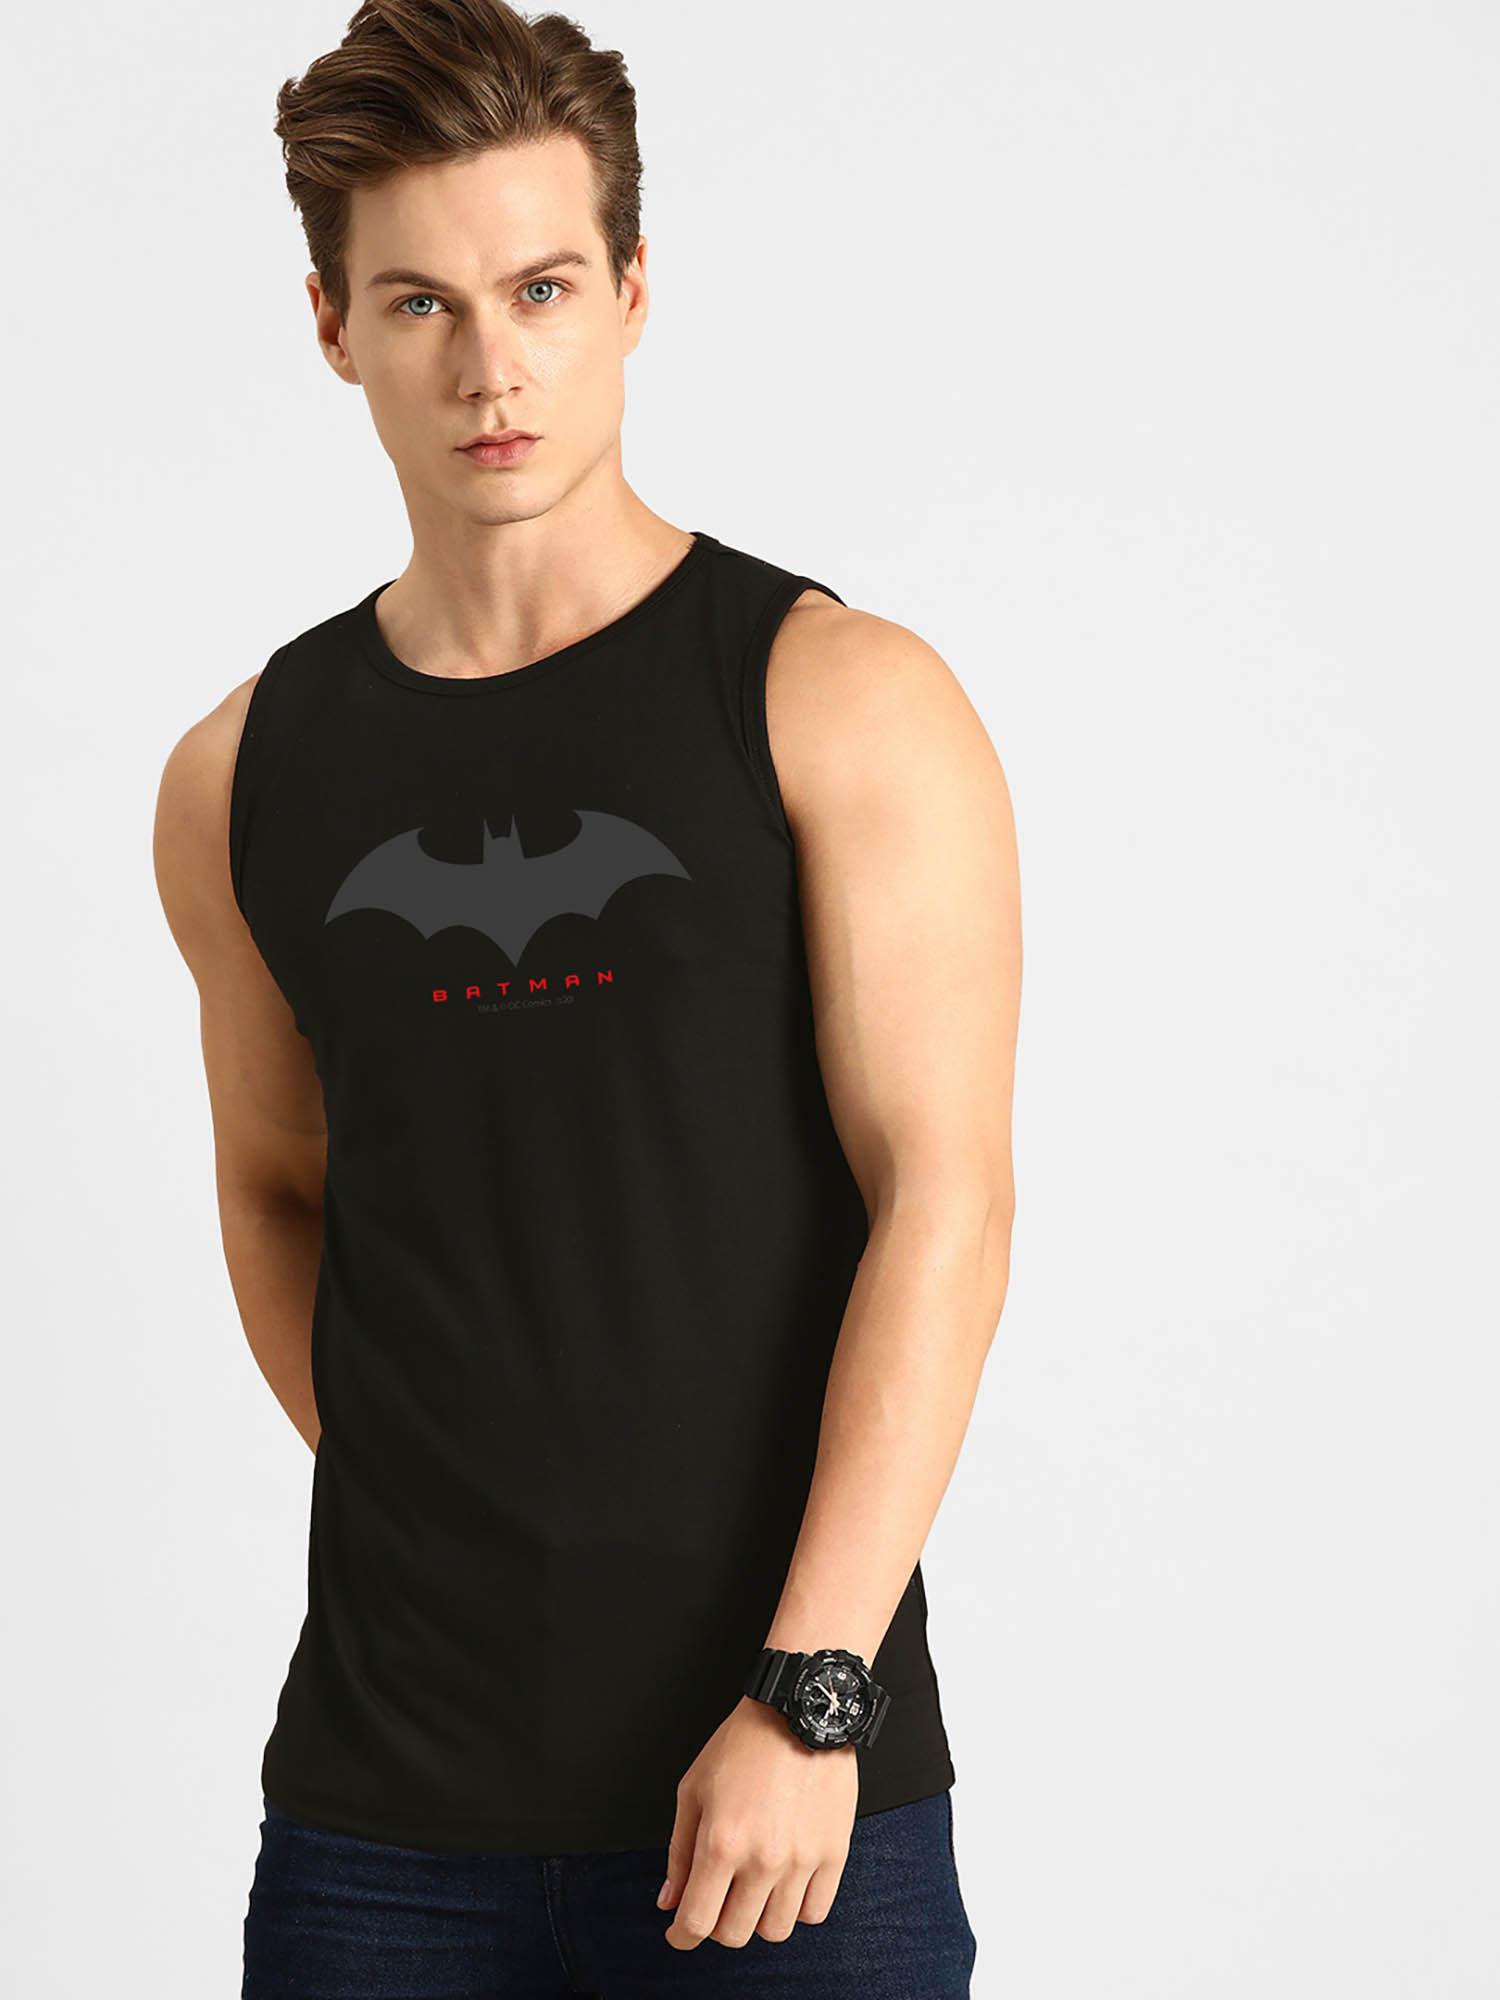 batman outline logo vest